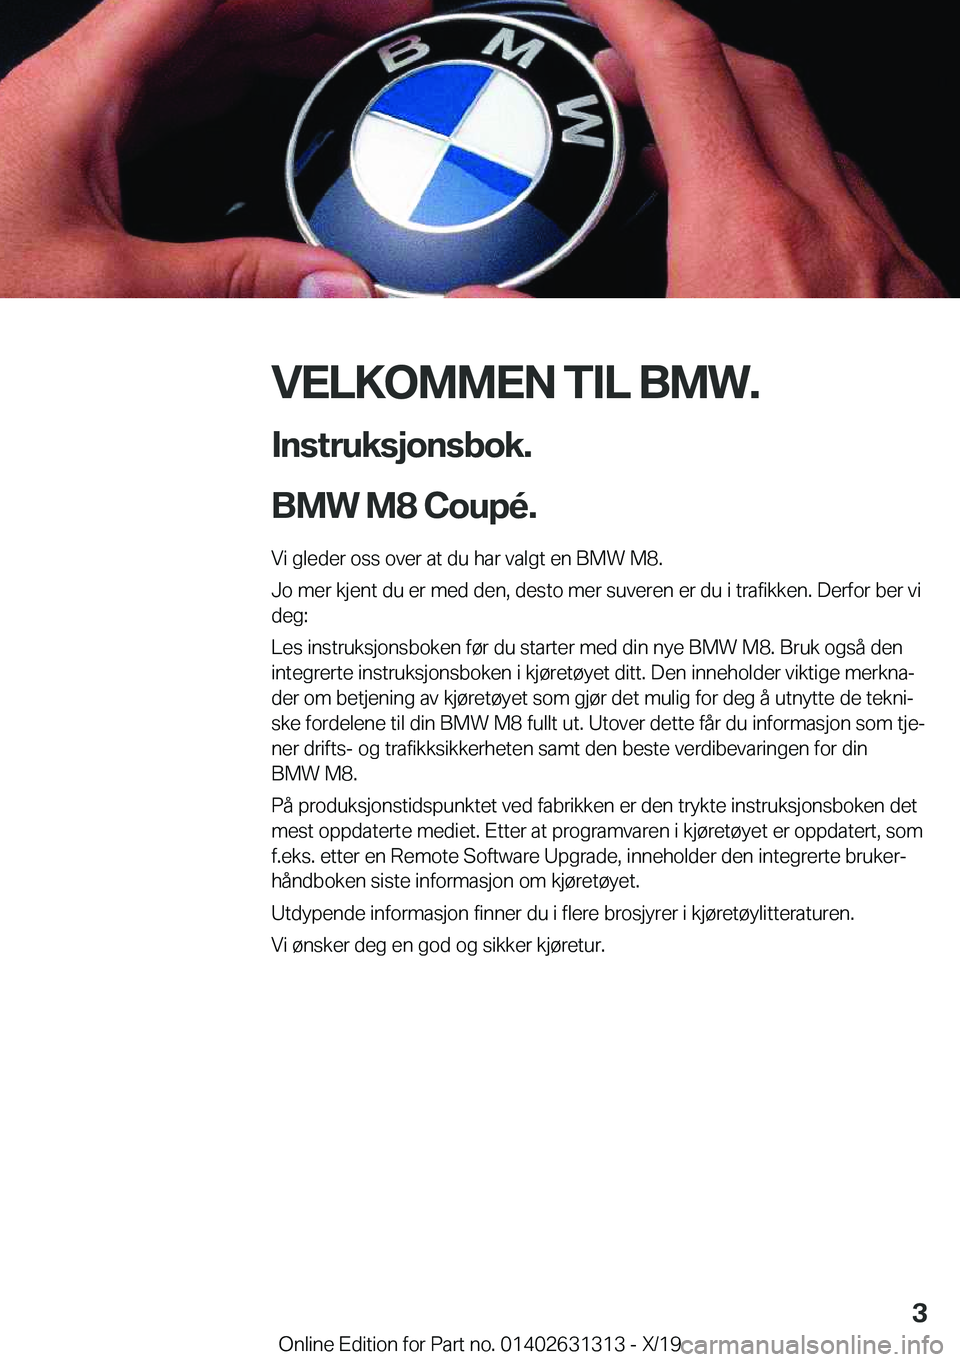 BMW M8 2020  InstruksjonsbØker (in Norwegian) �V�E�L�K�O�M�M�E�N��T�I�L��B�M�W�.�I�n�s�t�r�u�k�s�j�o�n�s�b�o�k�.
�B�M�W��M�8��C�o�u�p�